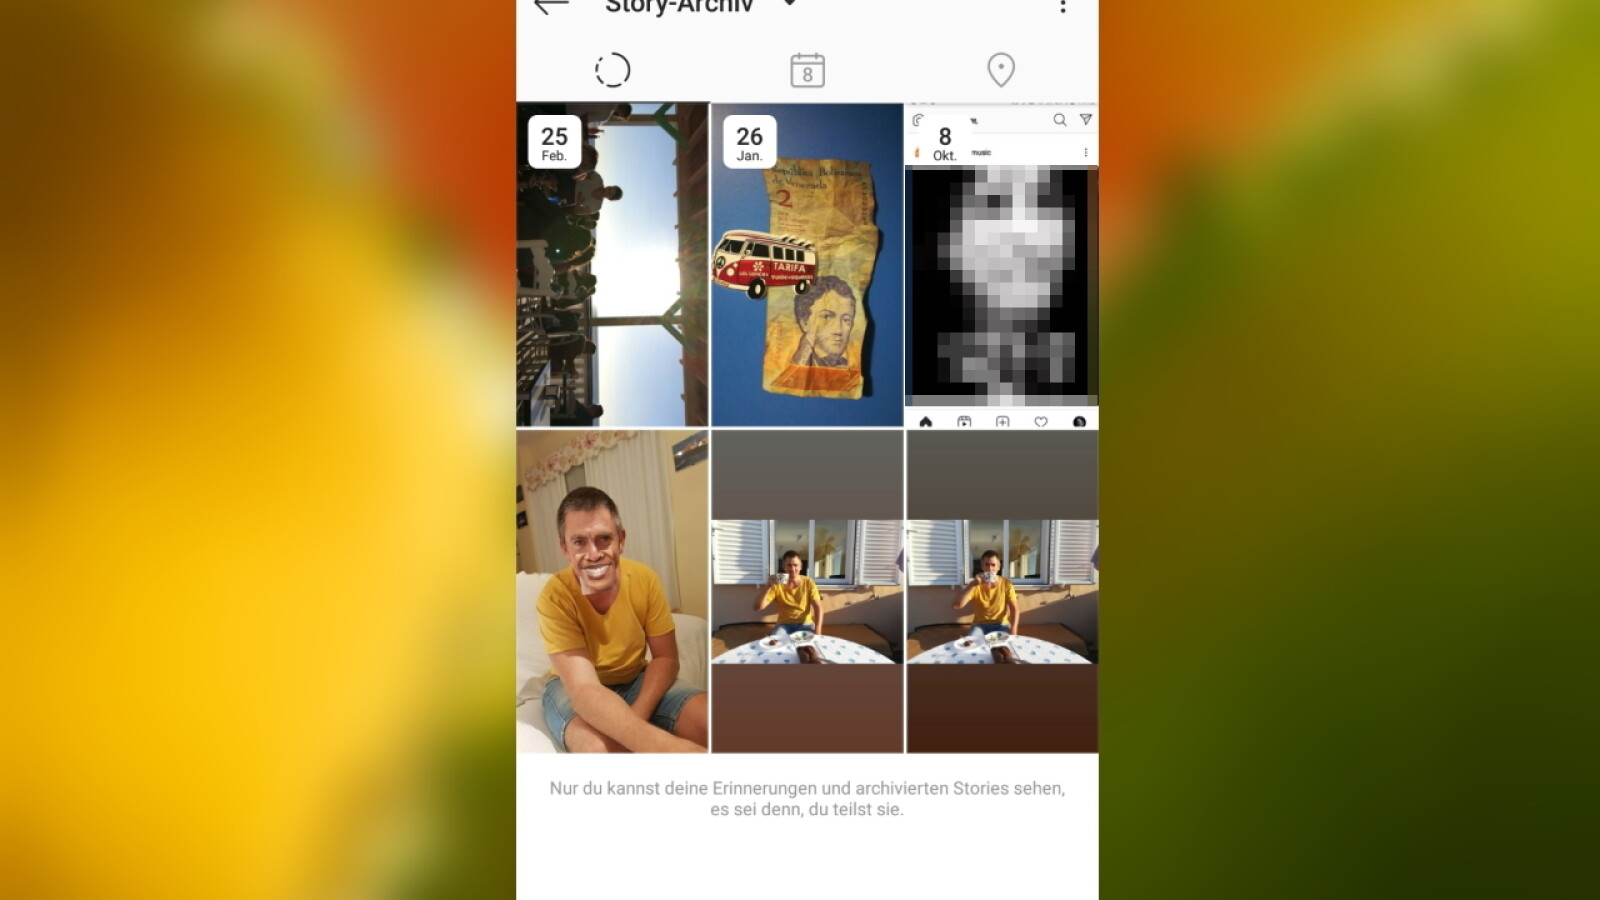 Instagram profilbilder sehen alte Alte und